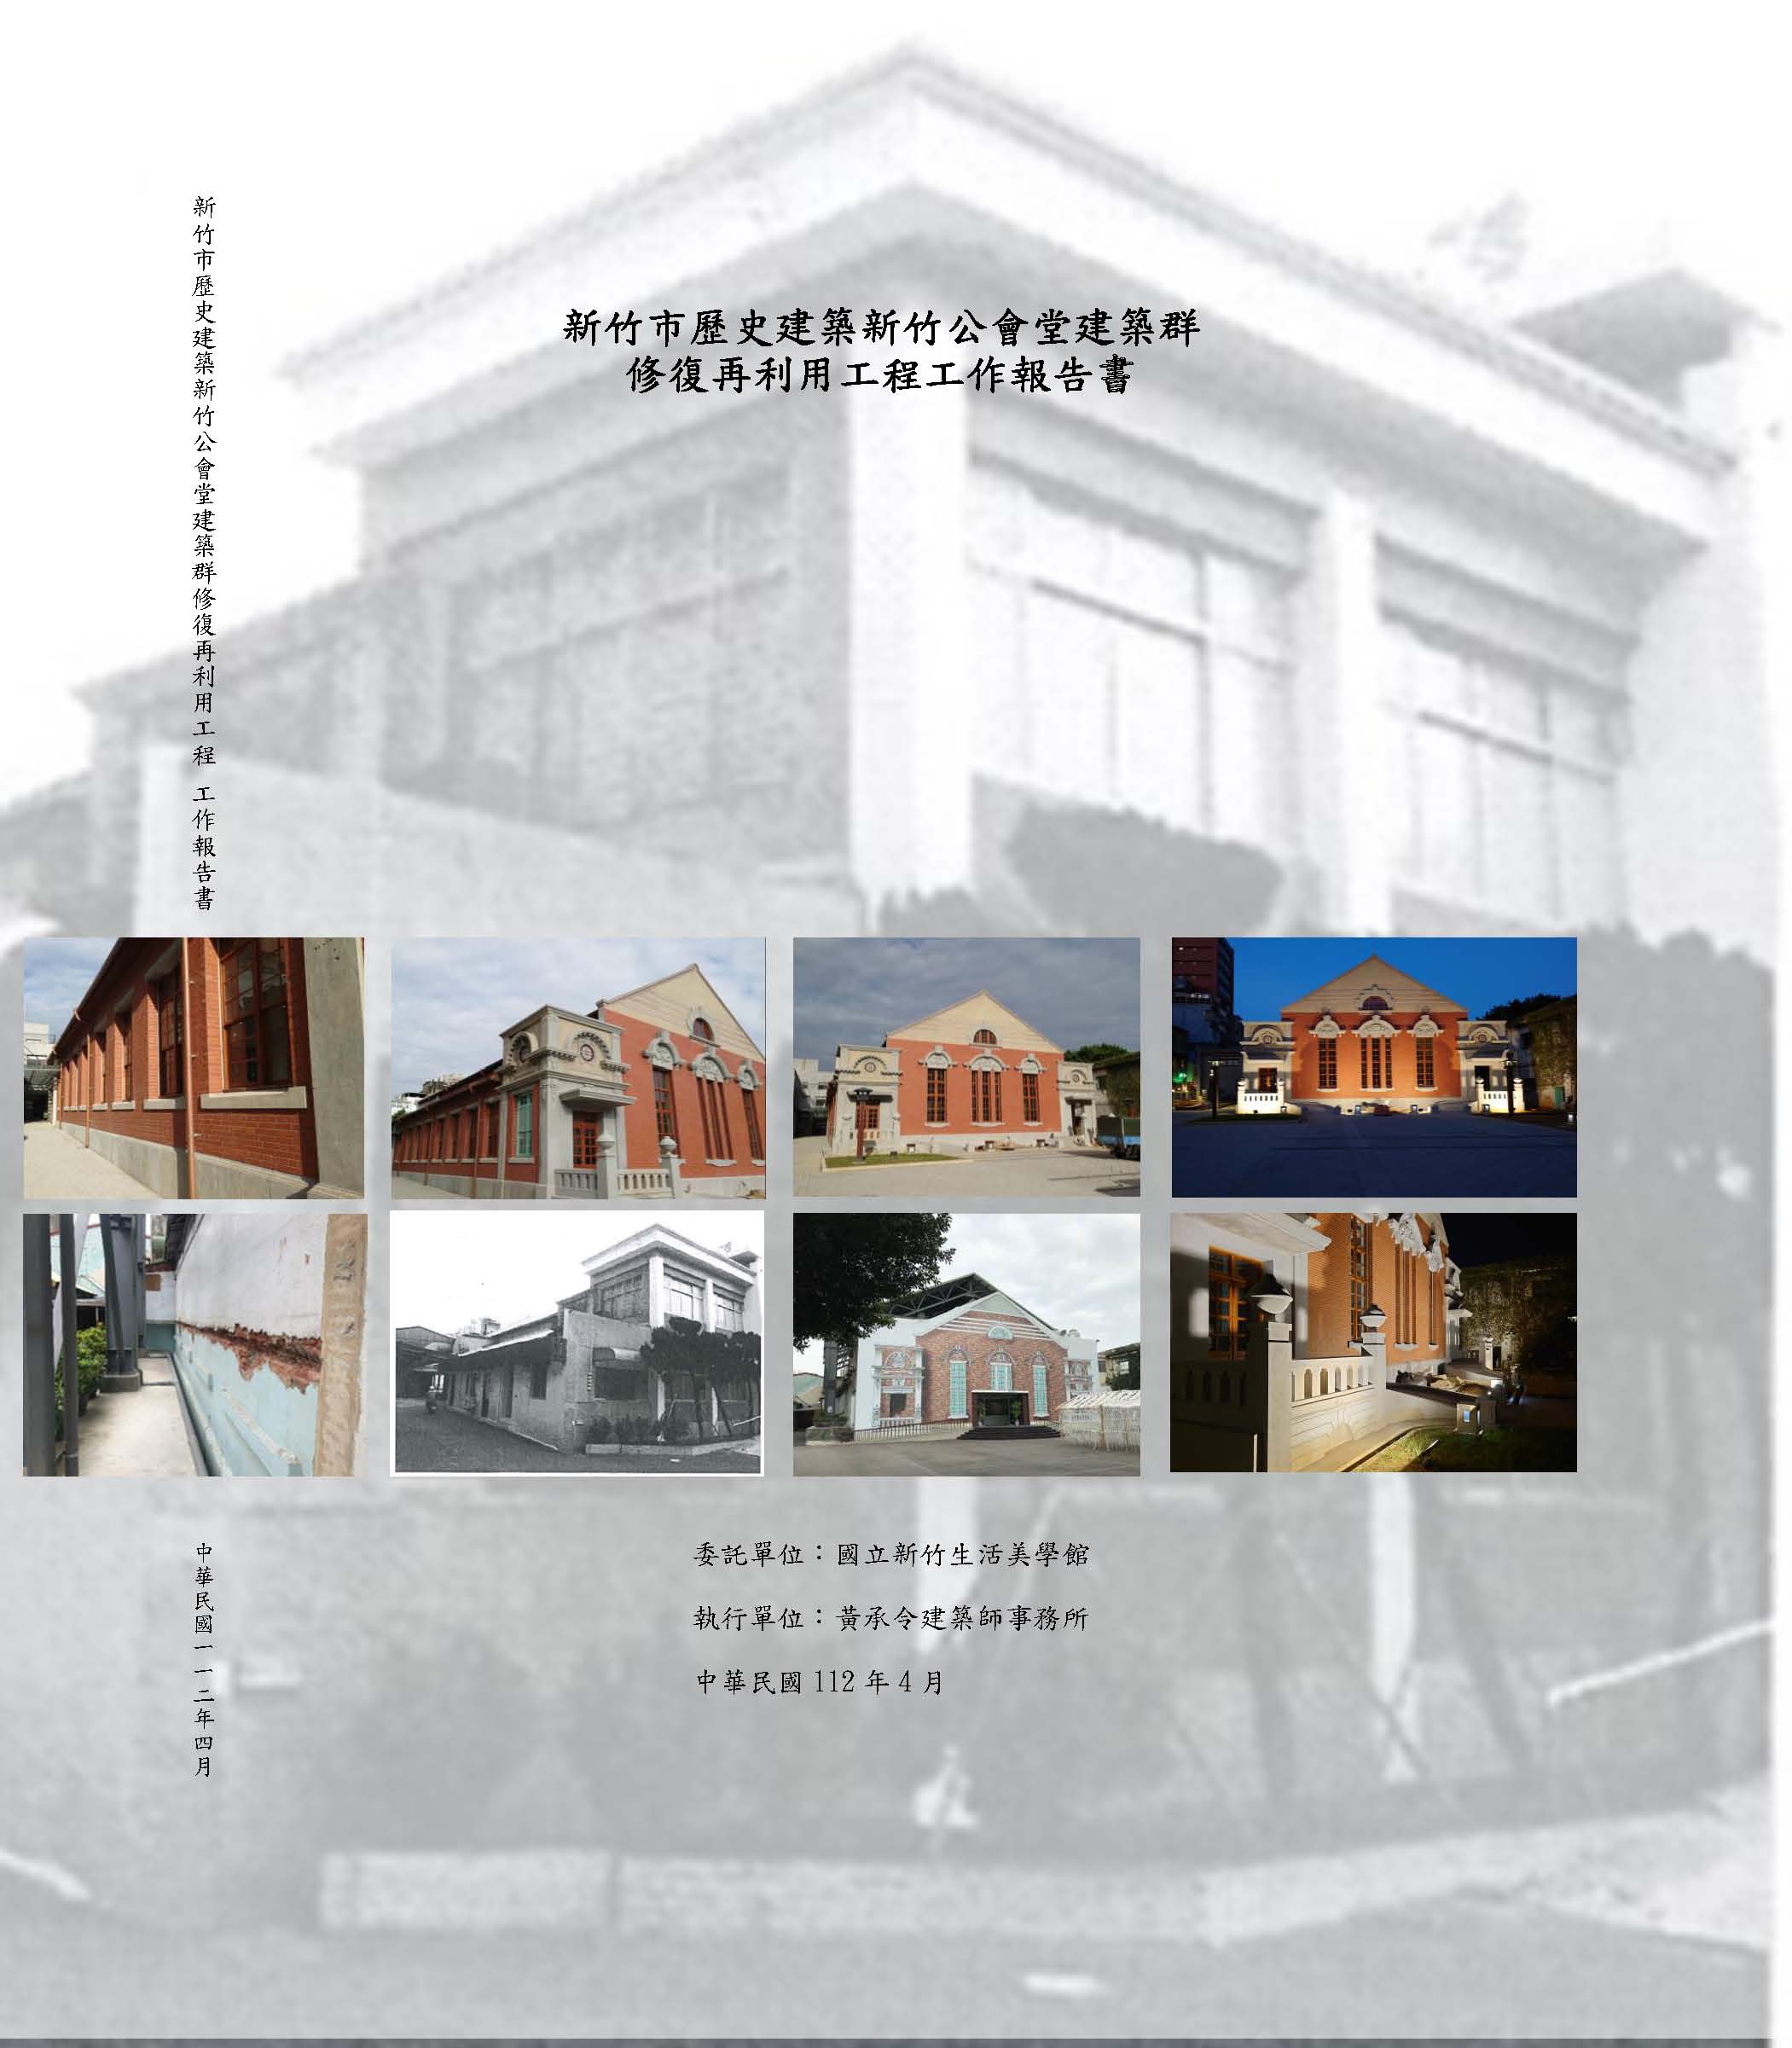 11204新竹市歷史建築新竹公會堂建築群修復再利用工程工作報告書